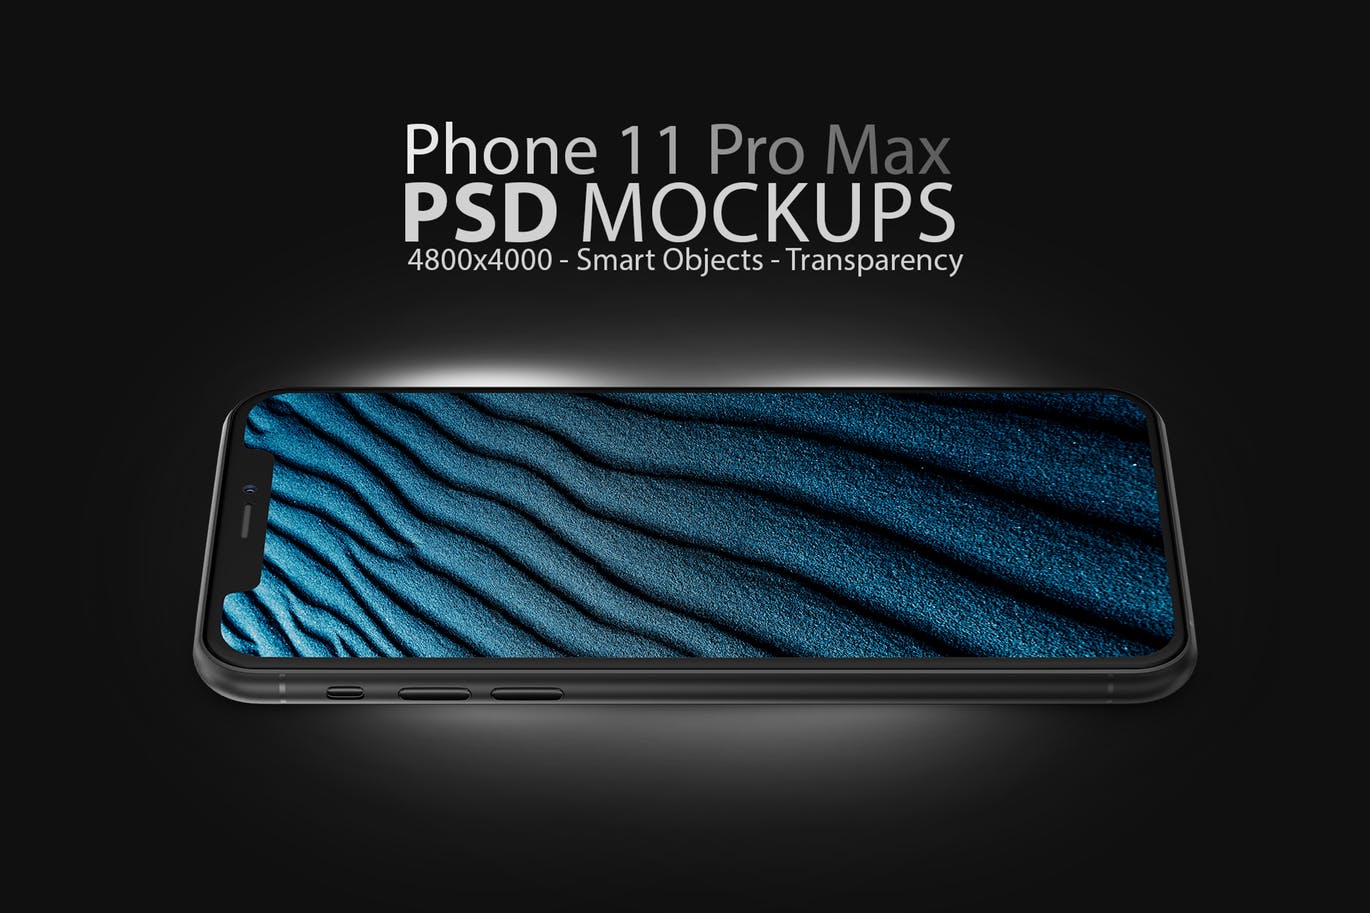 酷黑色iPhone 11 Pro Max屏幕预览素材库精选样机模板 Phone 11 Black PSD Mockups插图